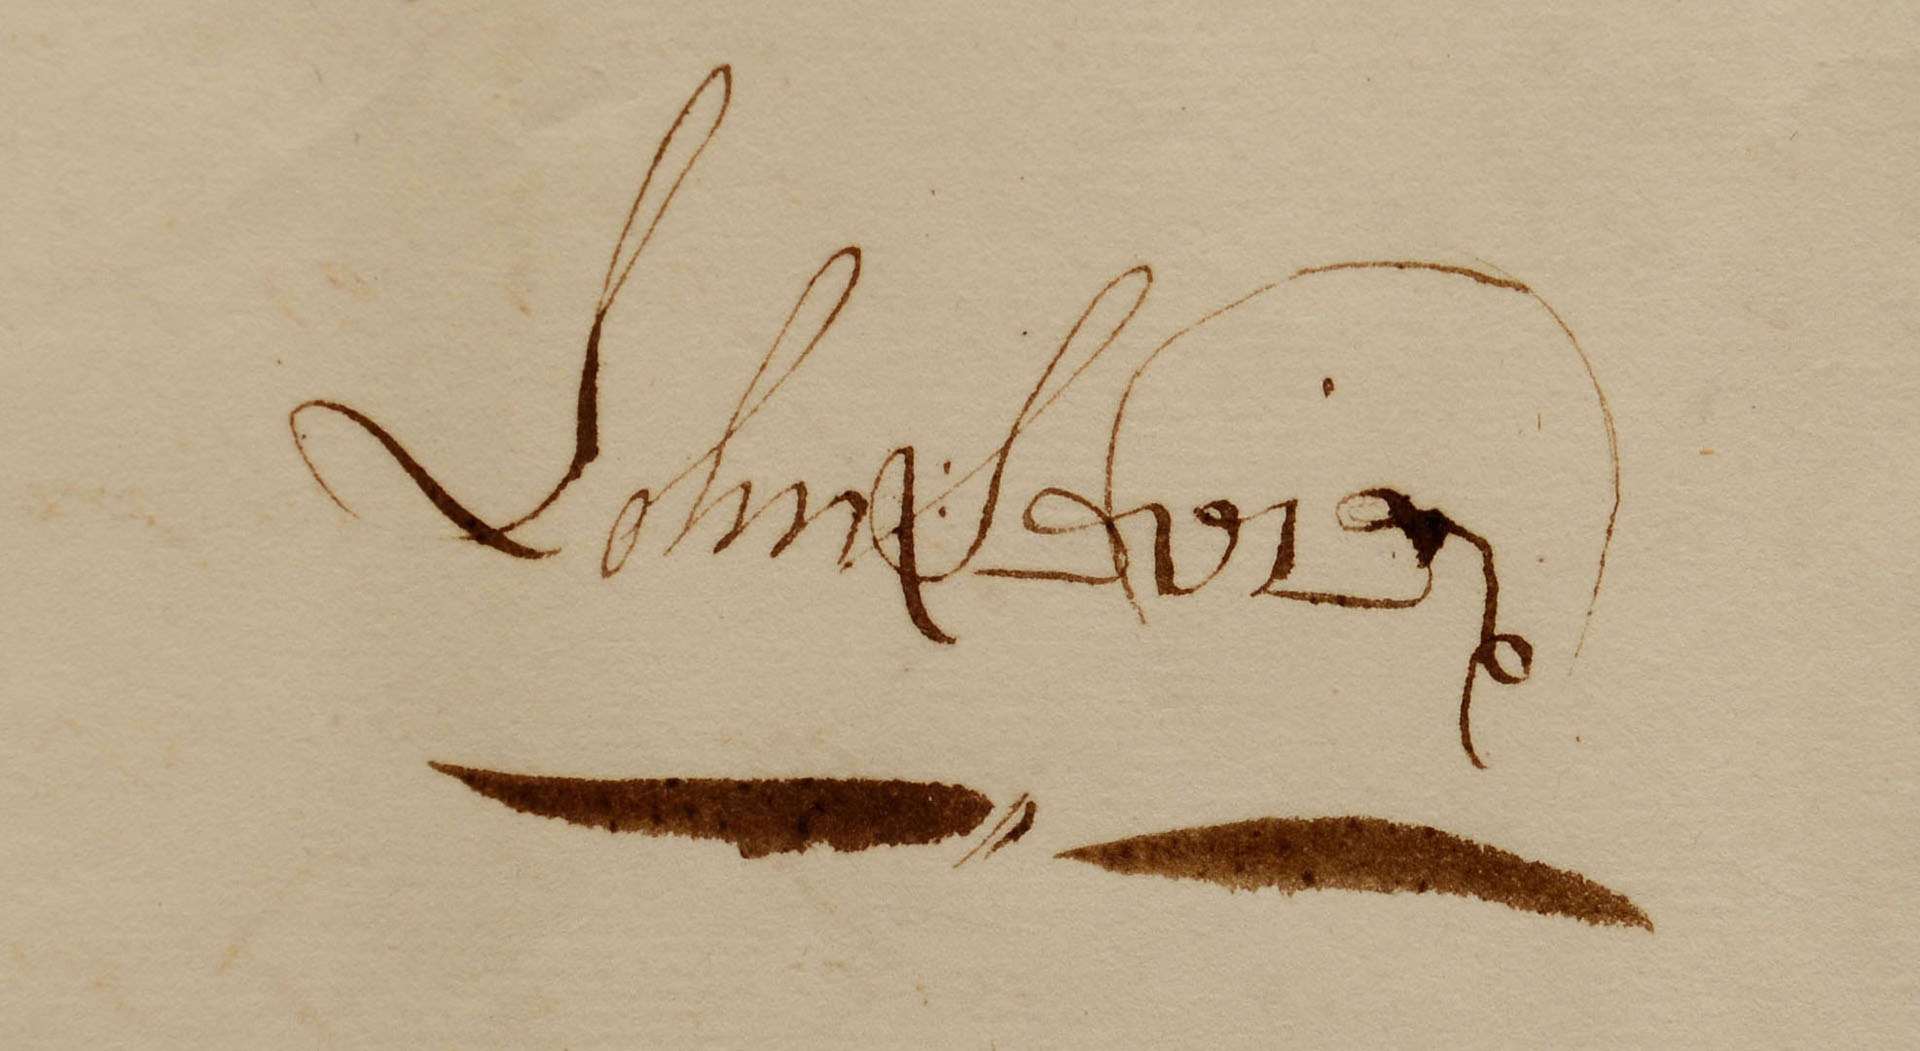 Lot 137: 1805 John Sevier signed document